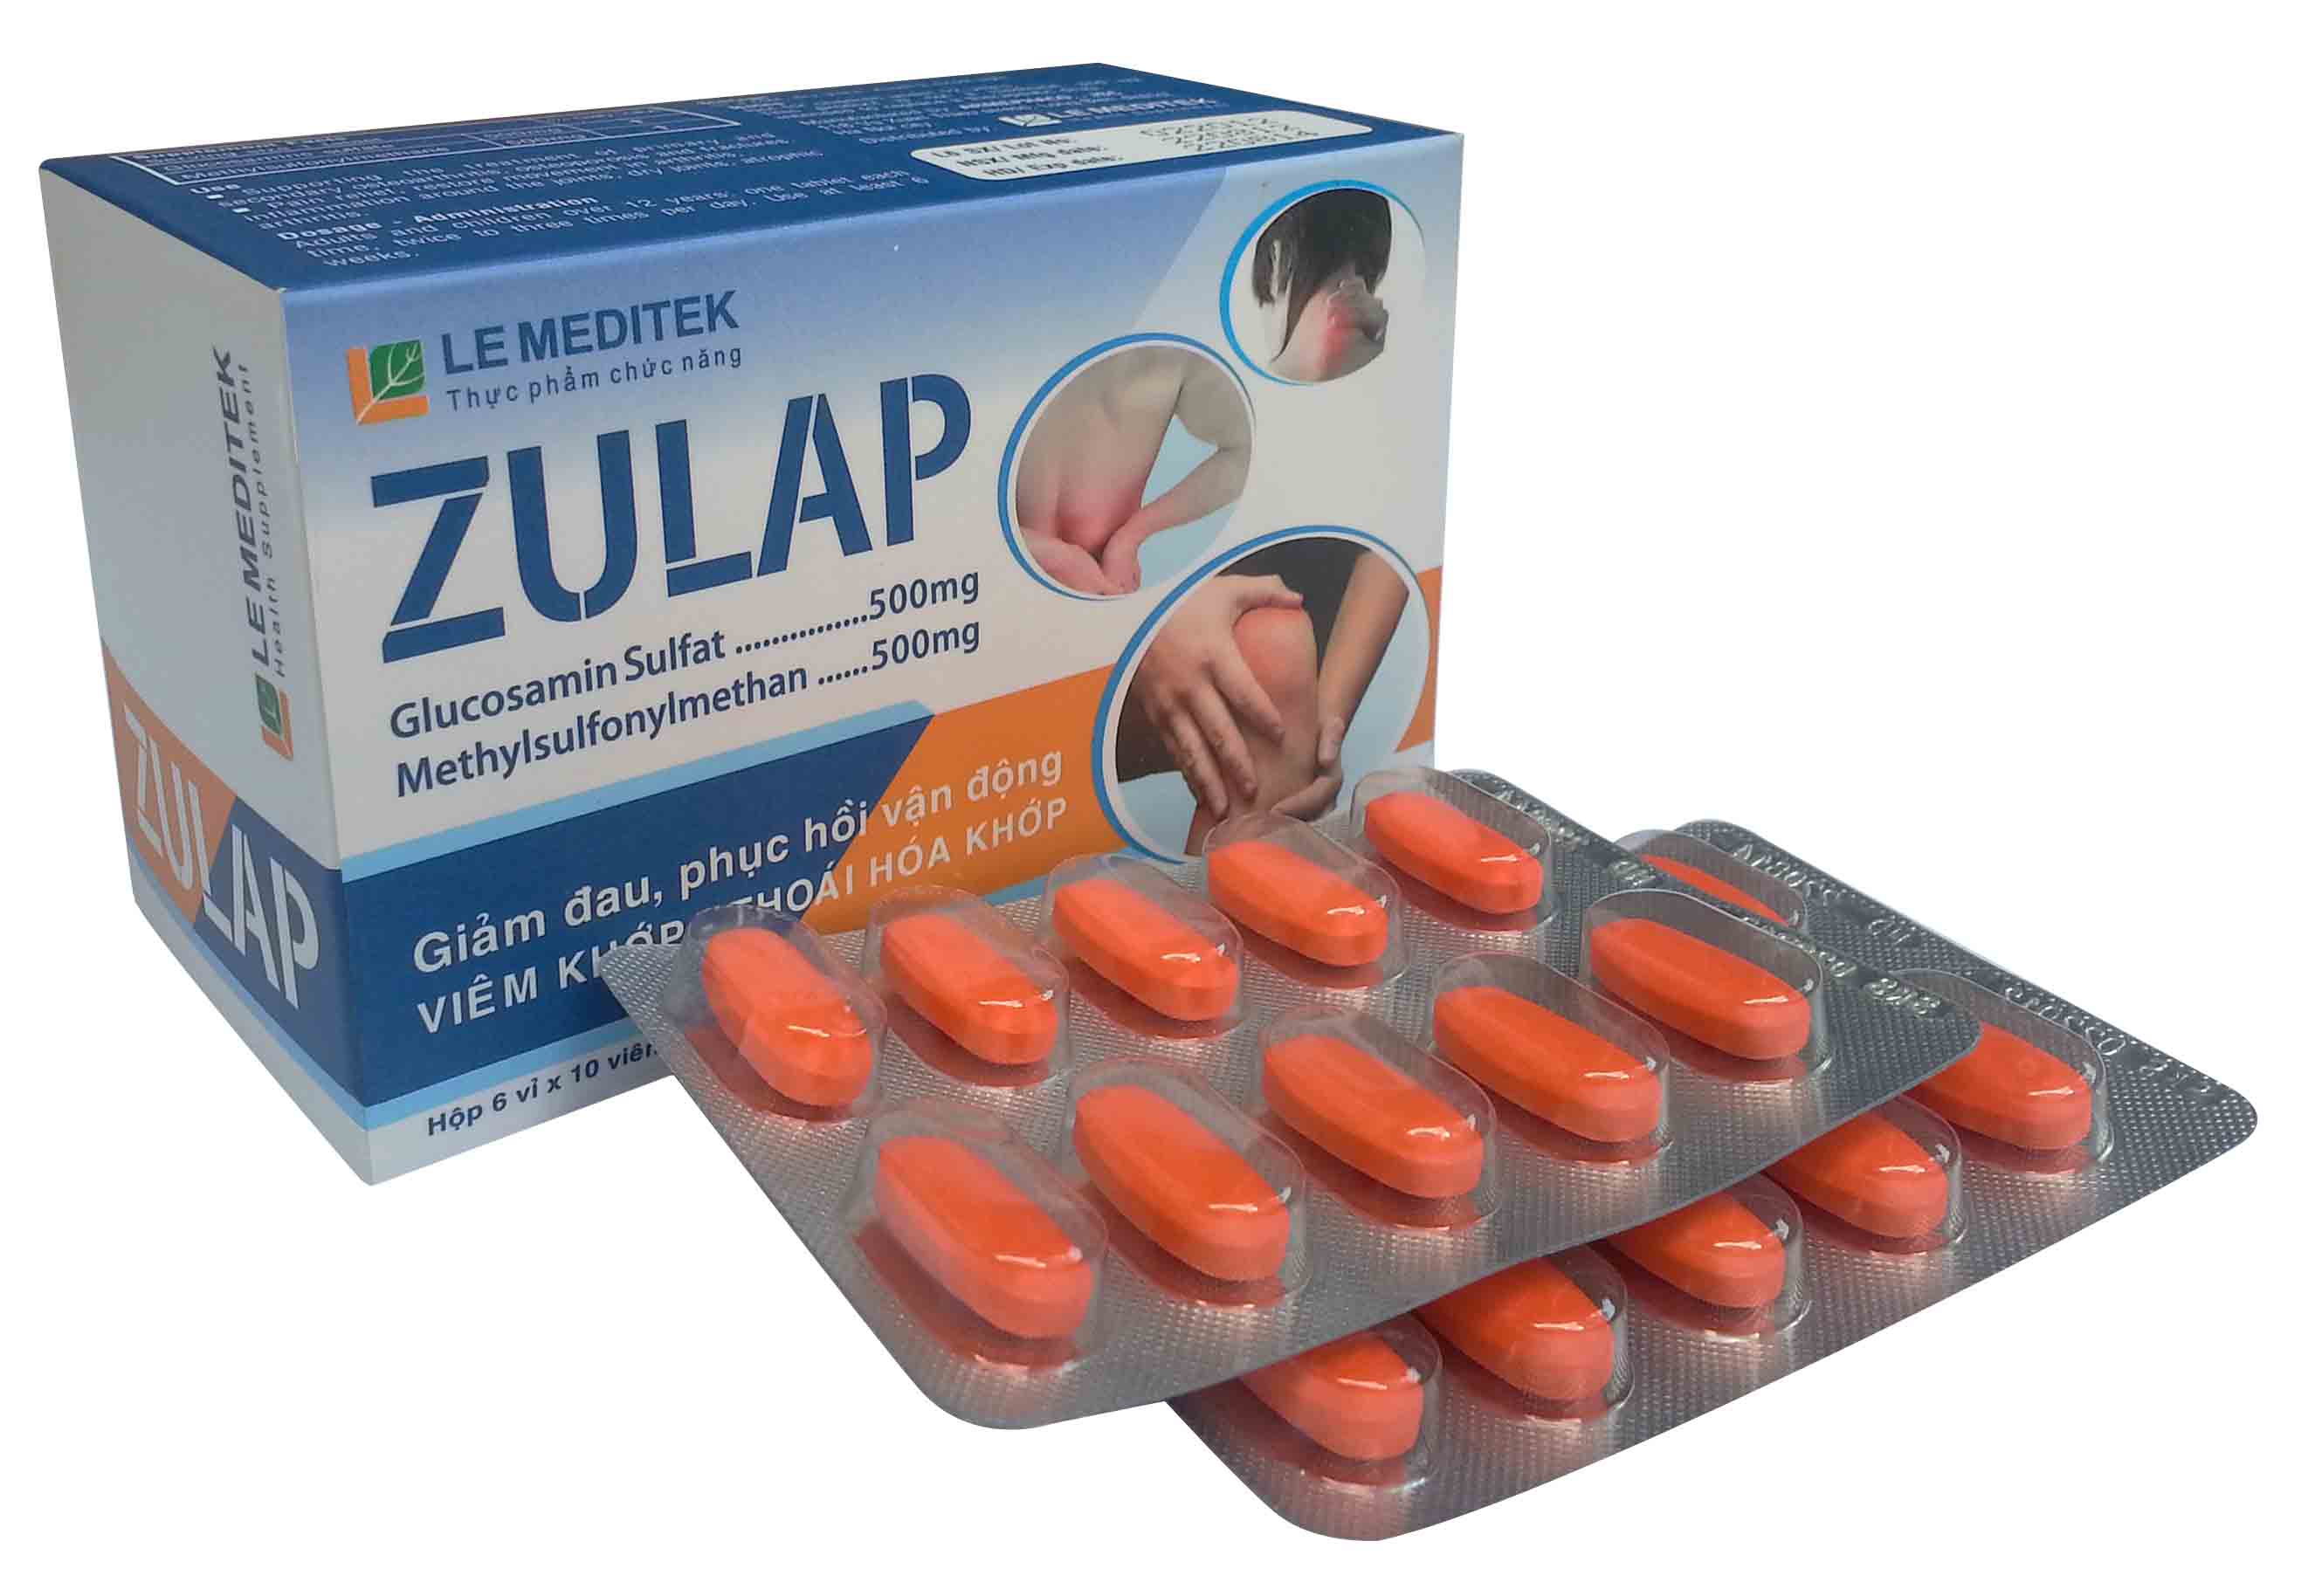 Zulap là giải pháp an toàn, hiệu quả và tiết kiệm cho bệnh thoái hóa khớp